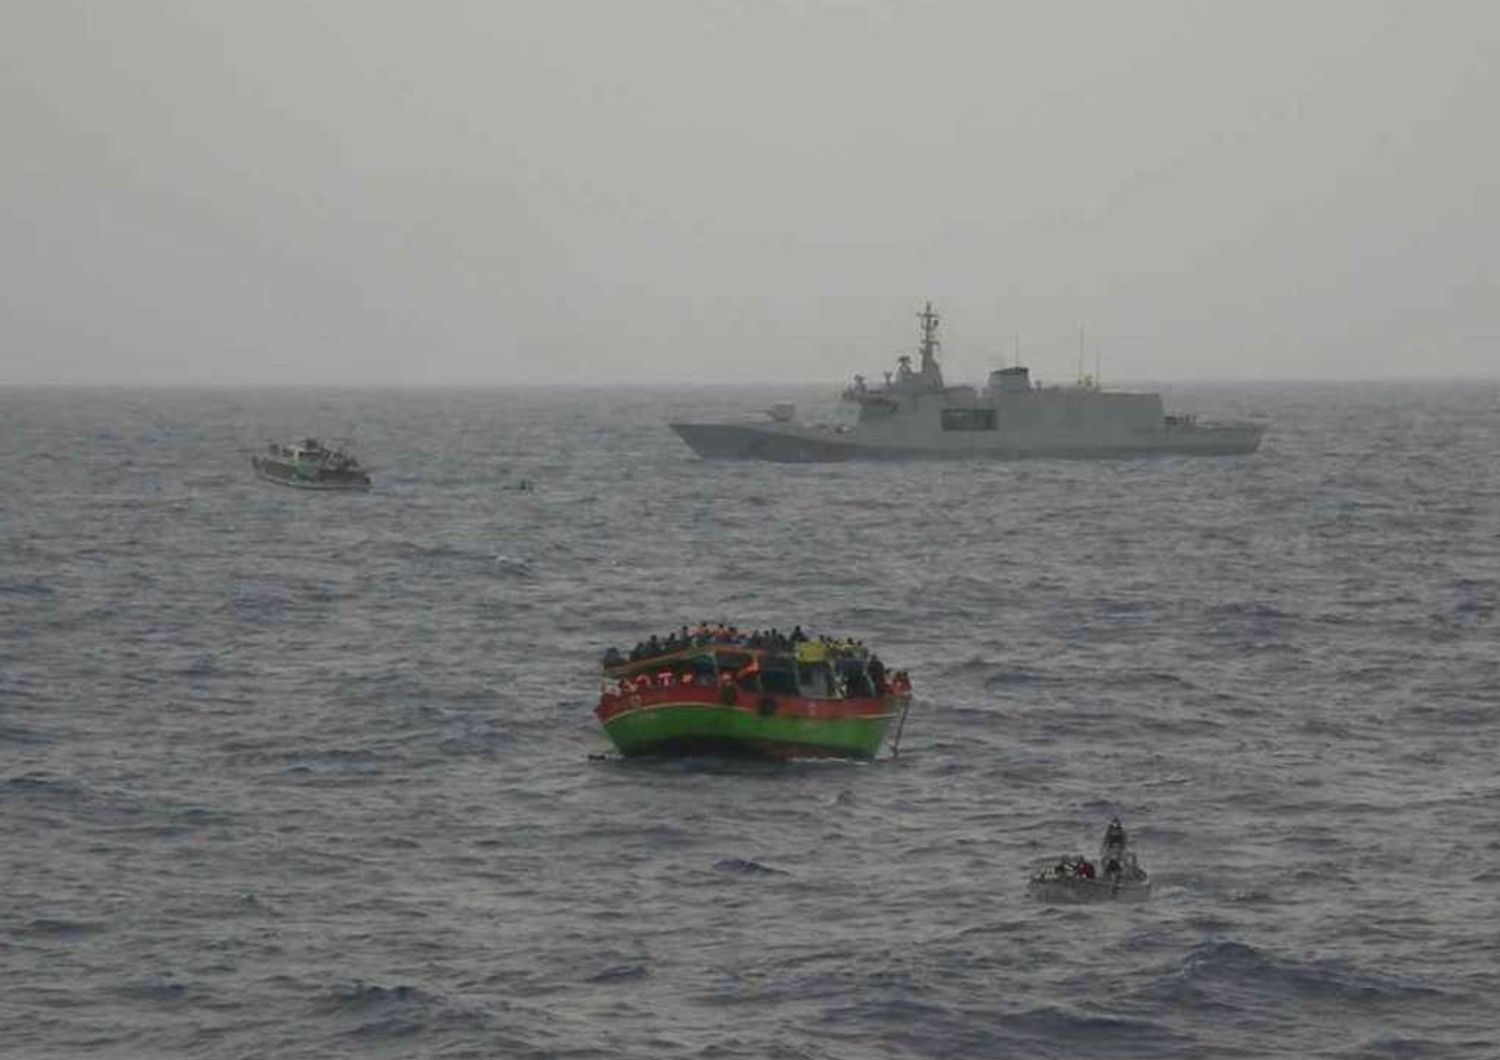 Immigrati: altra tragedia in LibiaNaufraga gommone, 30 dispersi